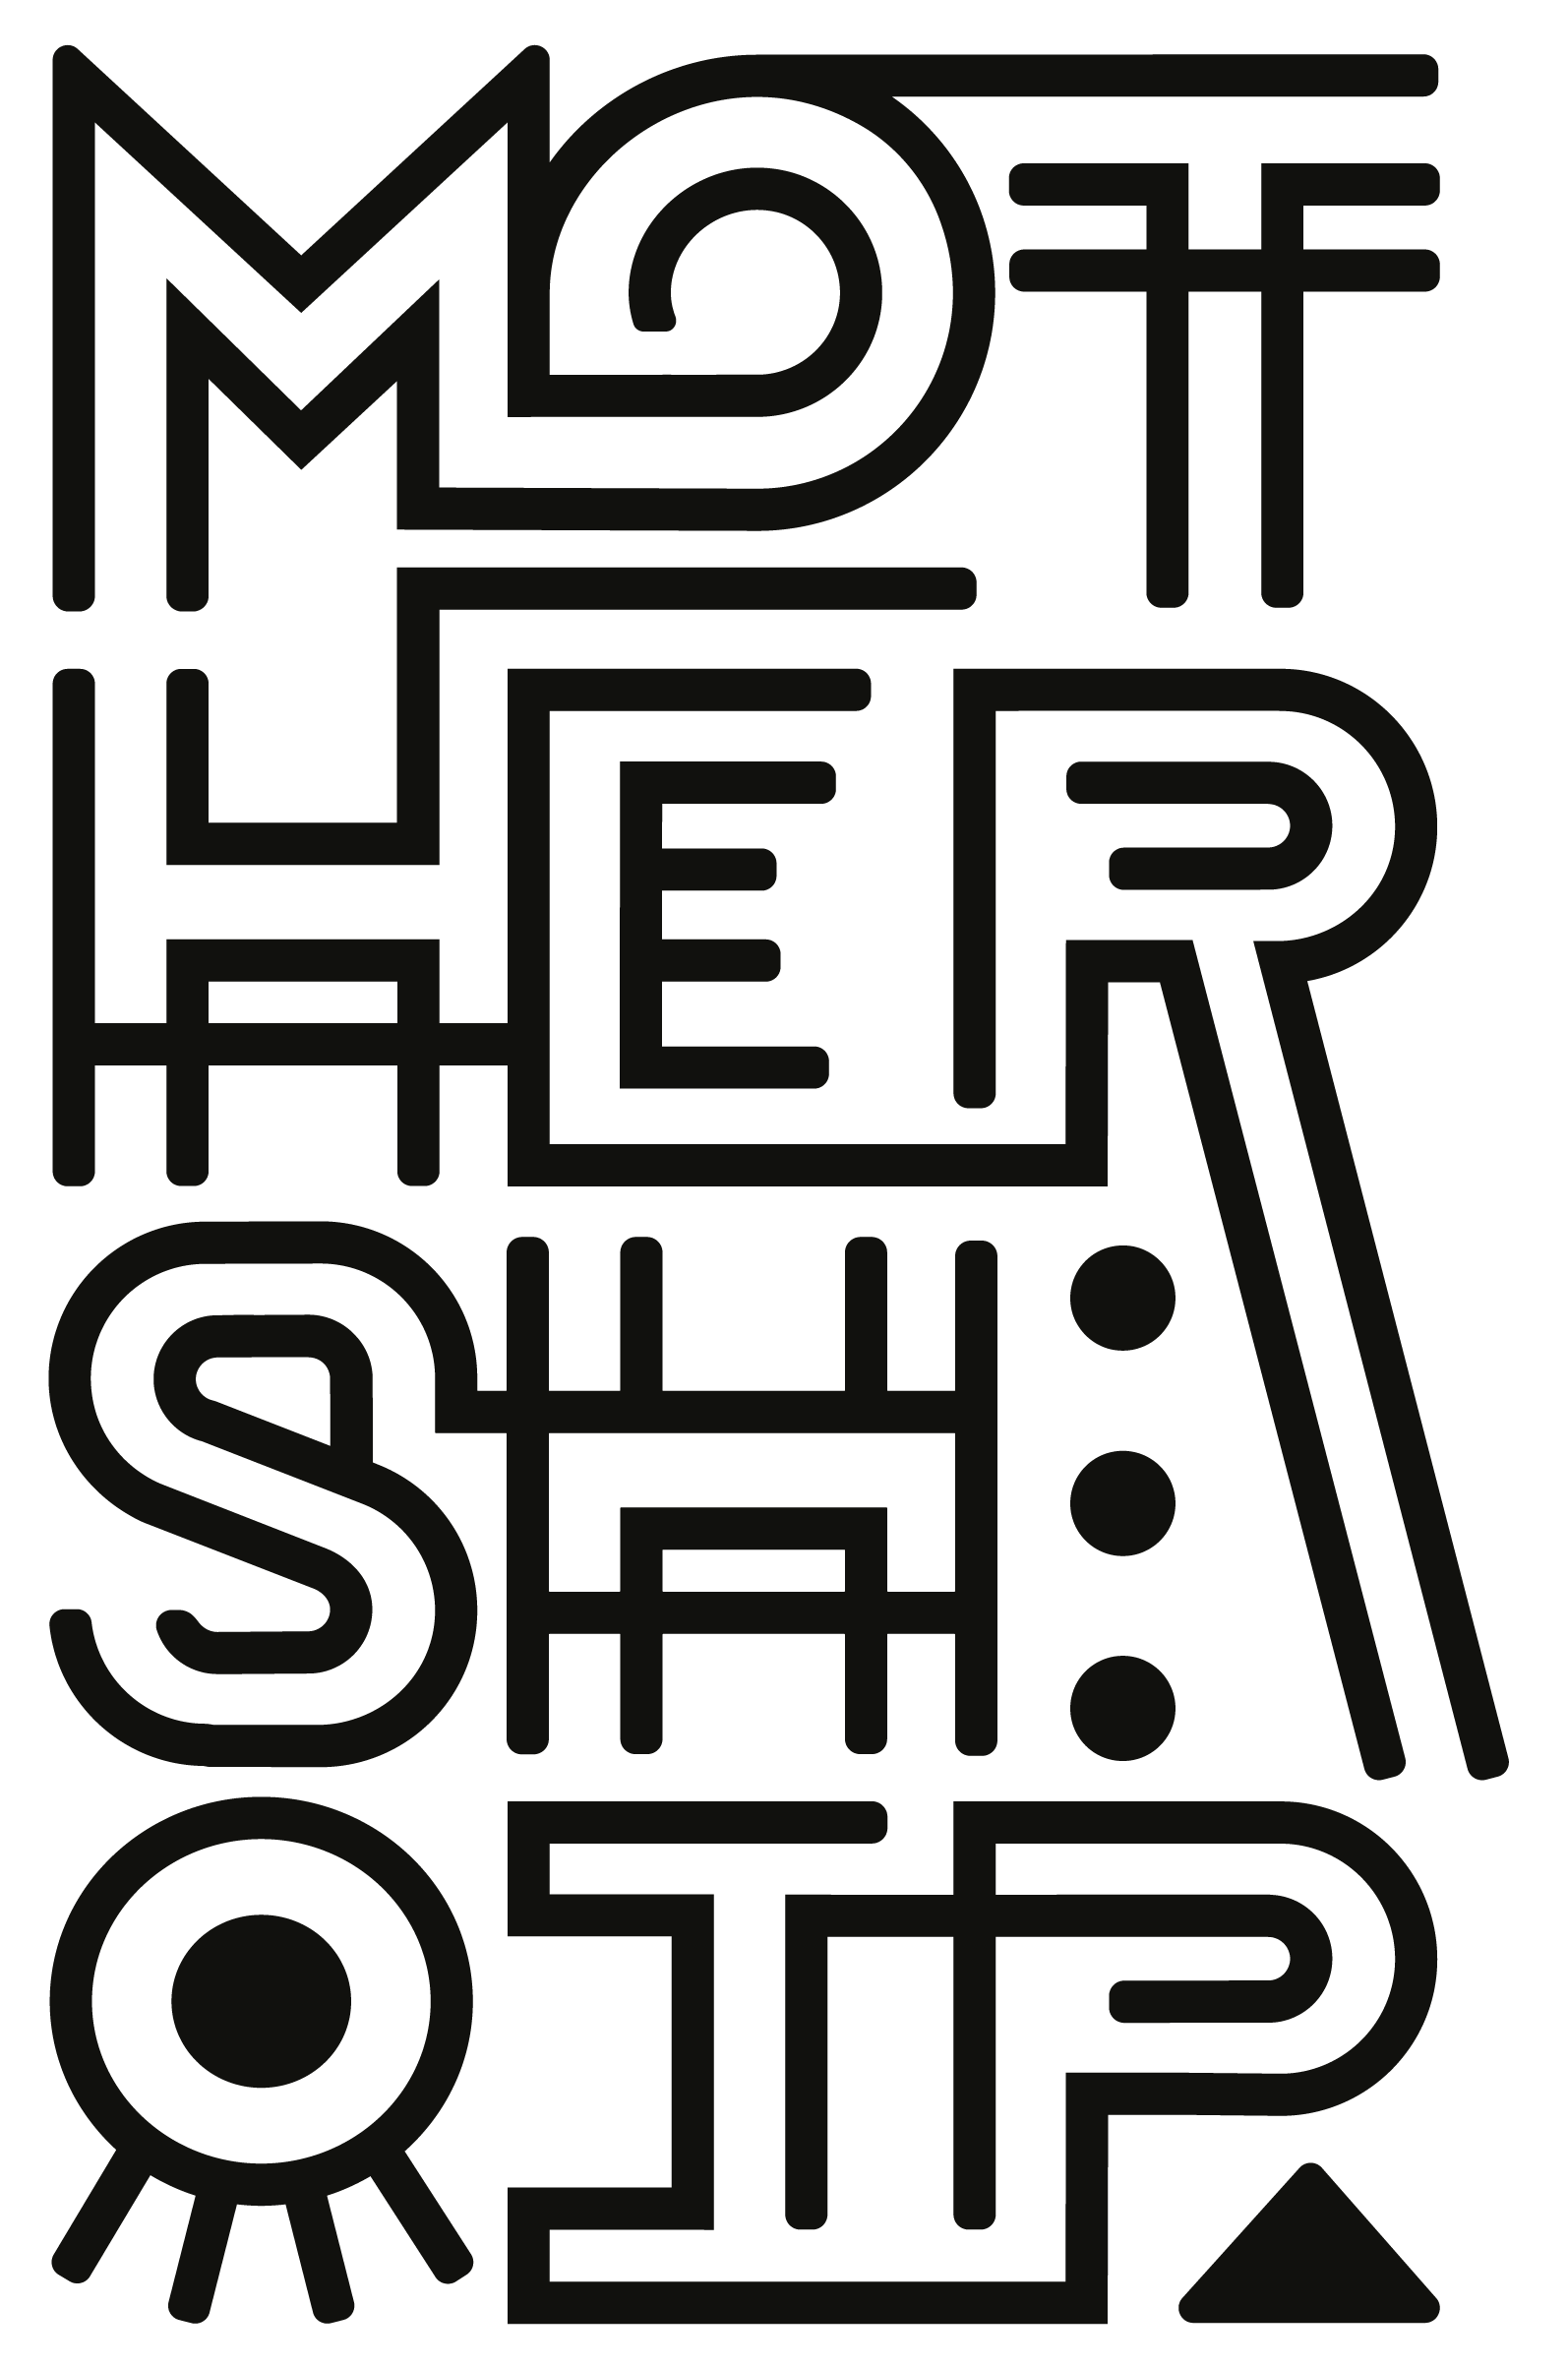 Mothership Logo